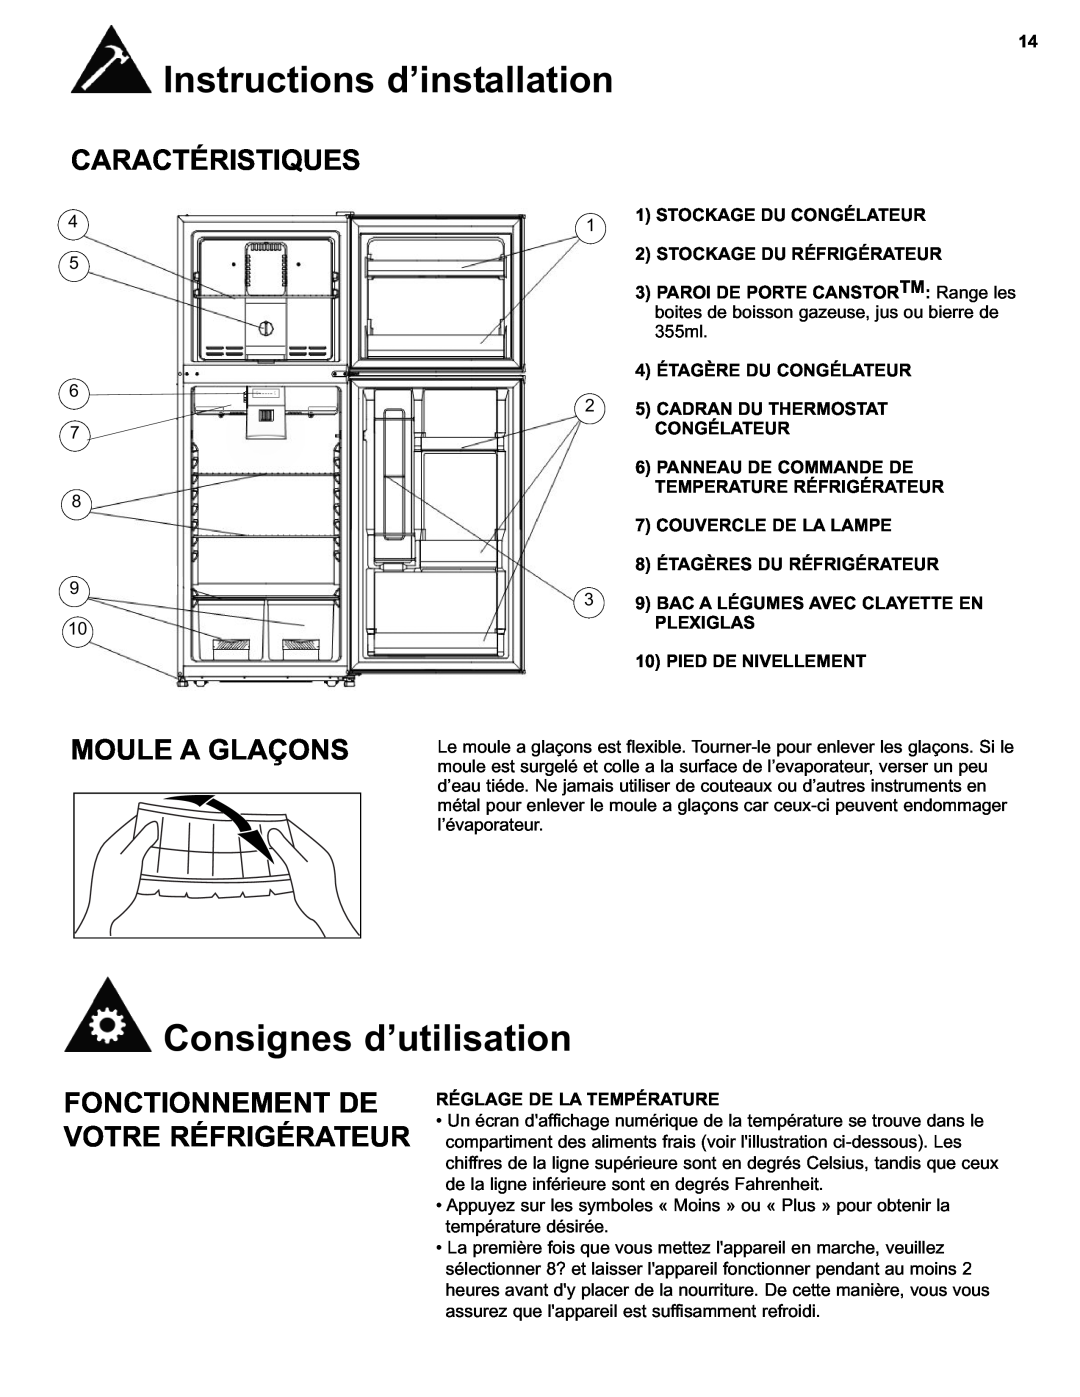 Danby DFF280WDB manual Consignes d’utilisation, Caractéristiques, Moule A Glaçons, Fonctionnement De Votre Réfrigérateur 